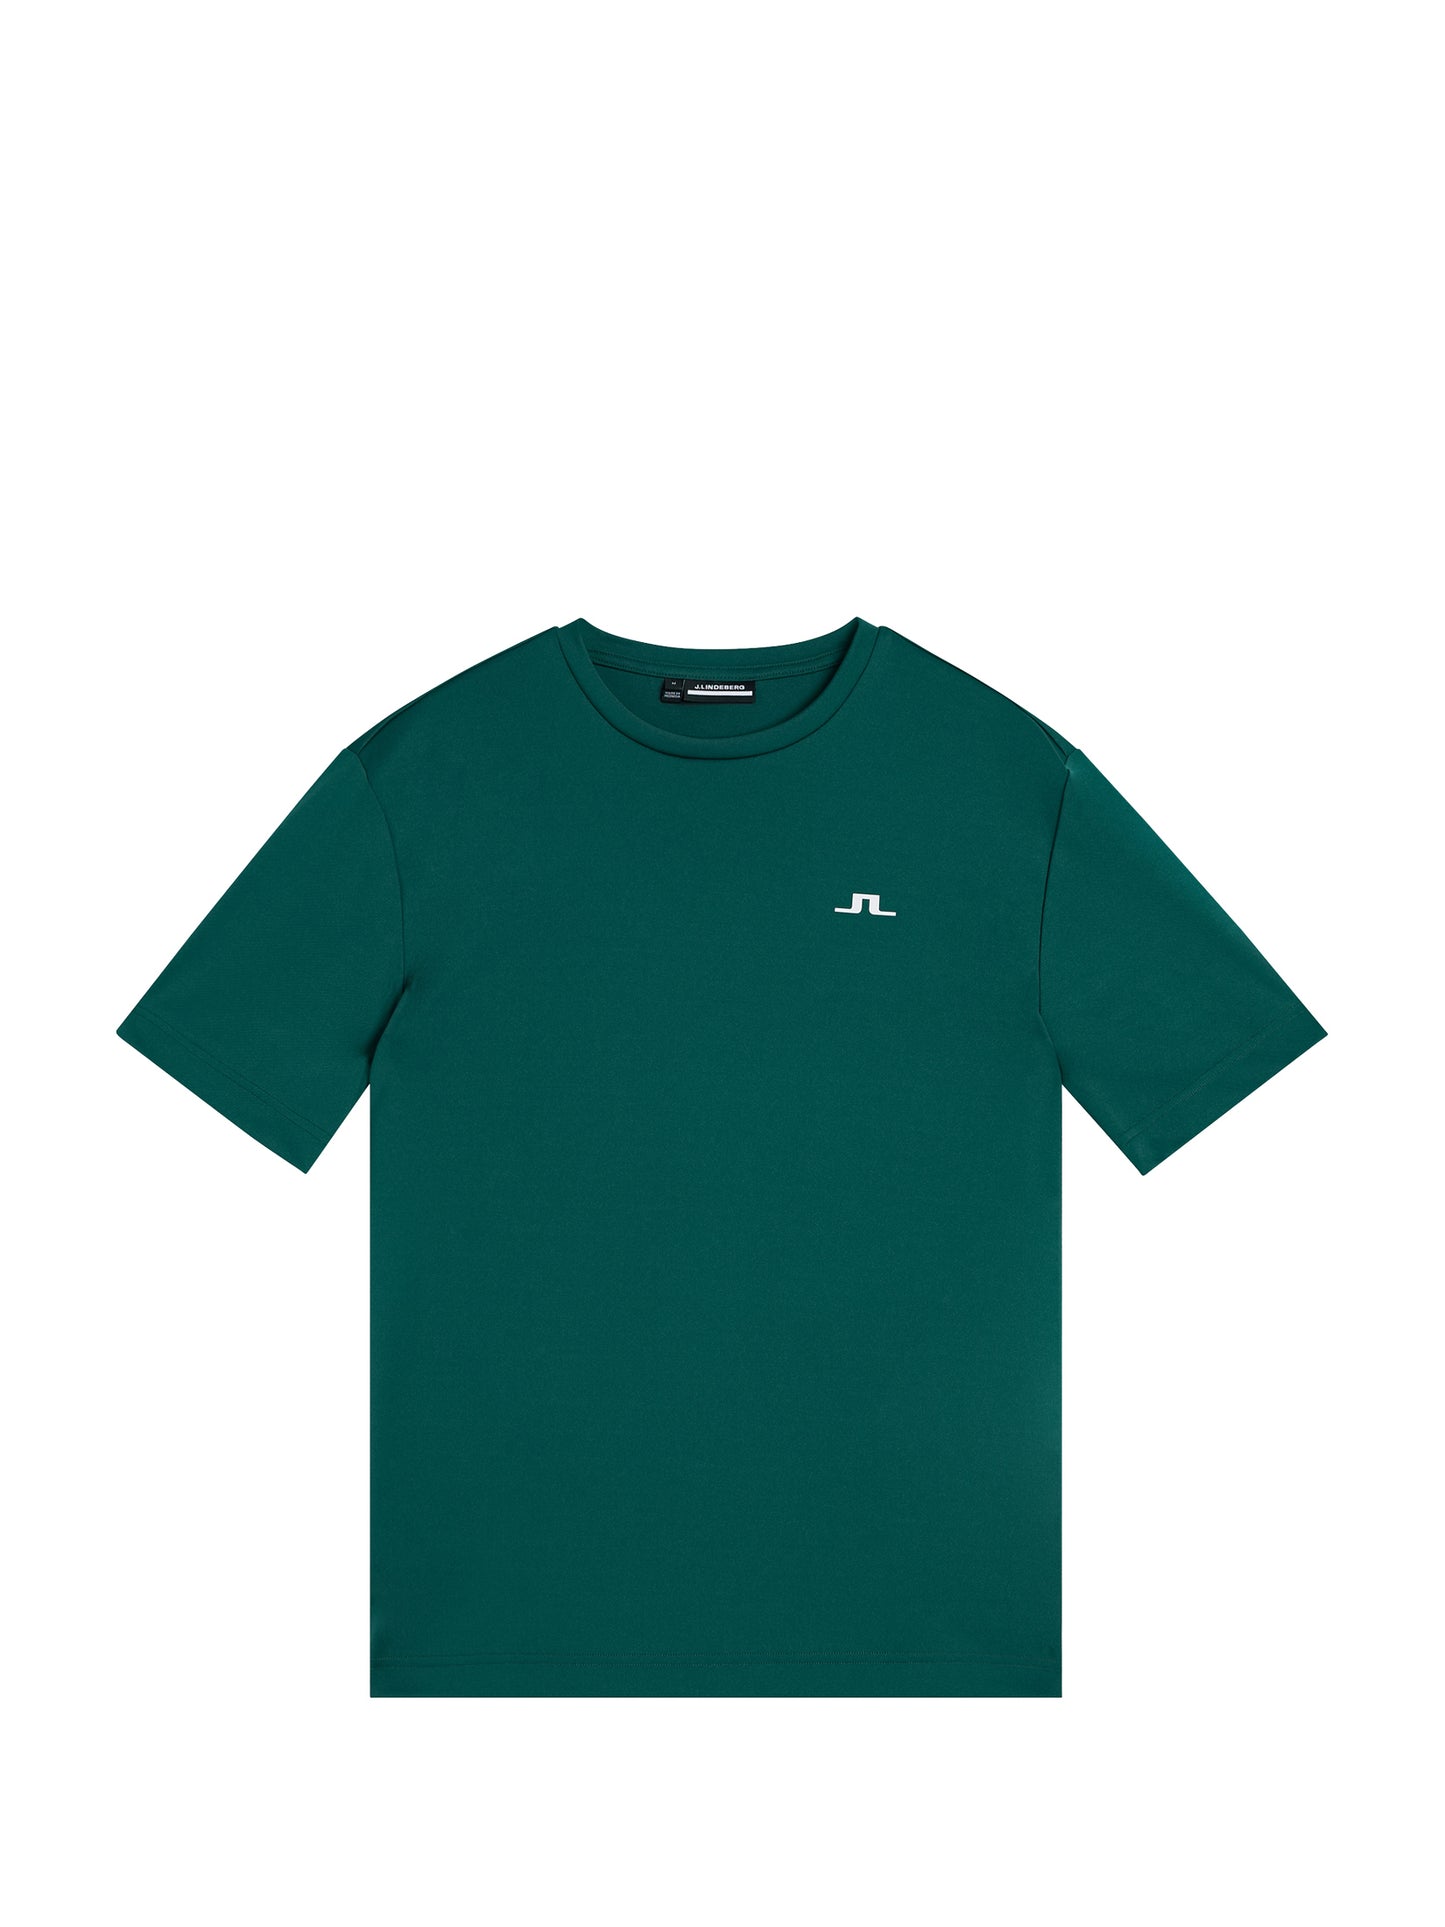 Ade T-shirt / Rain Forest